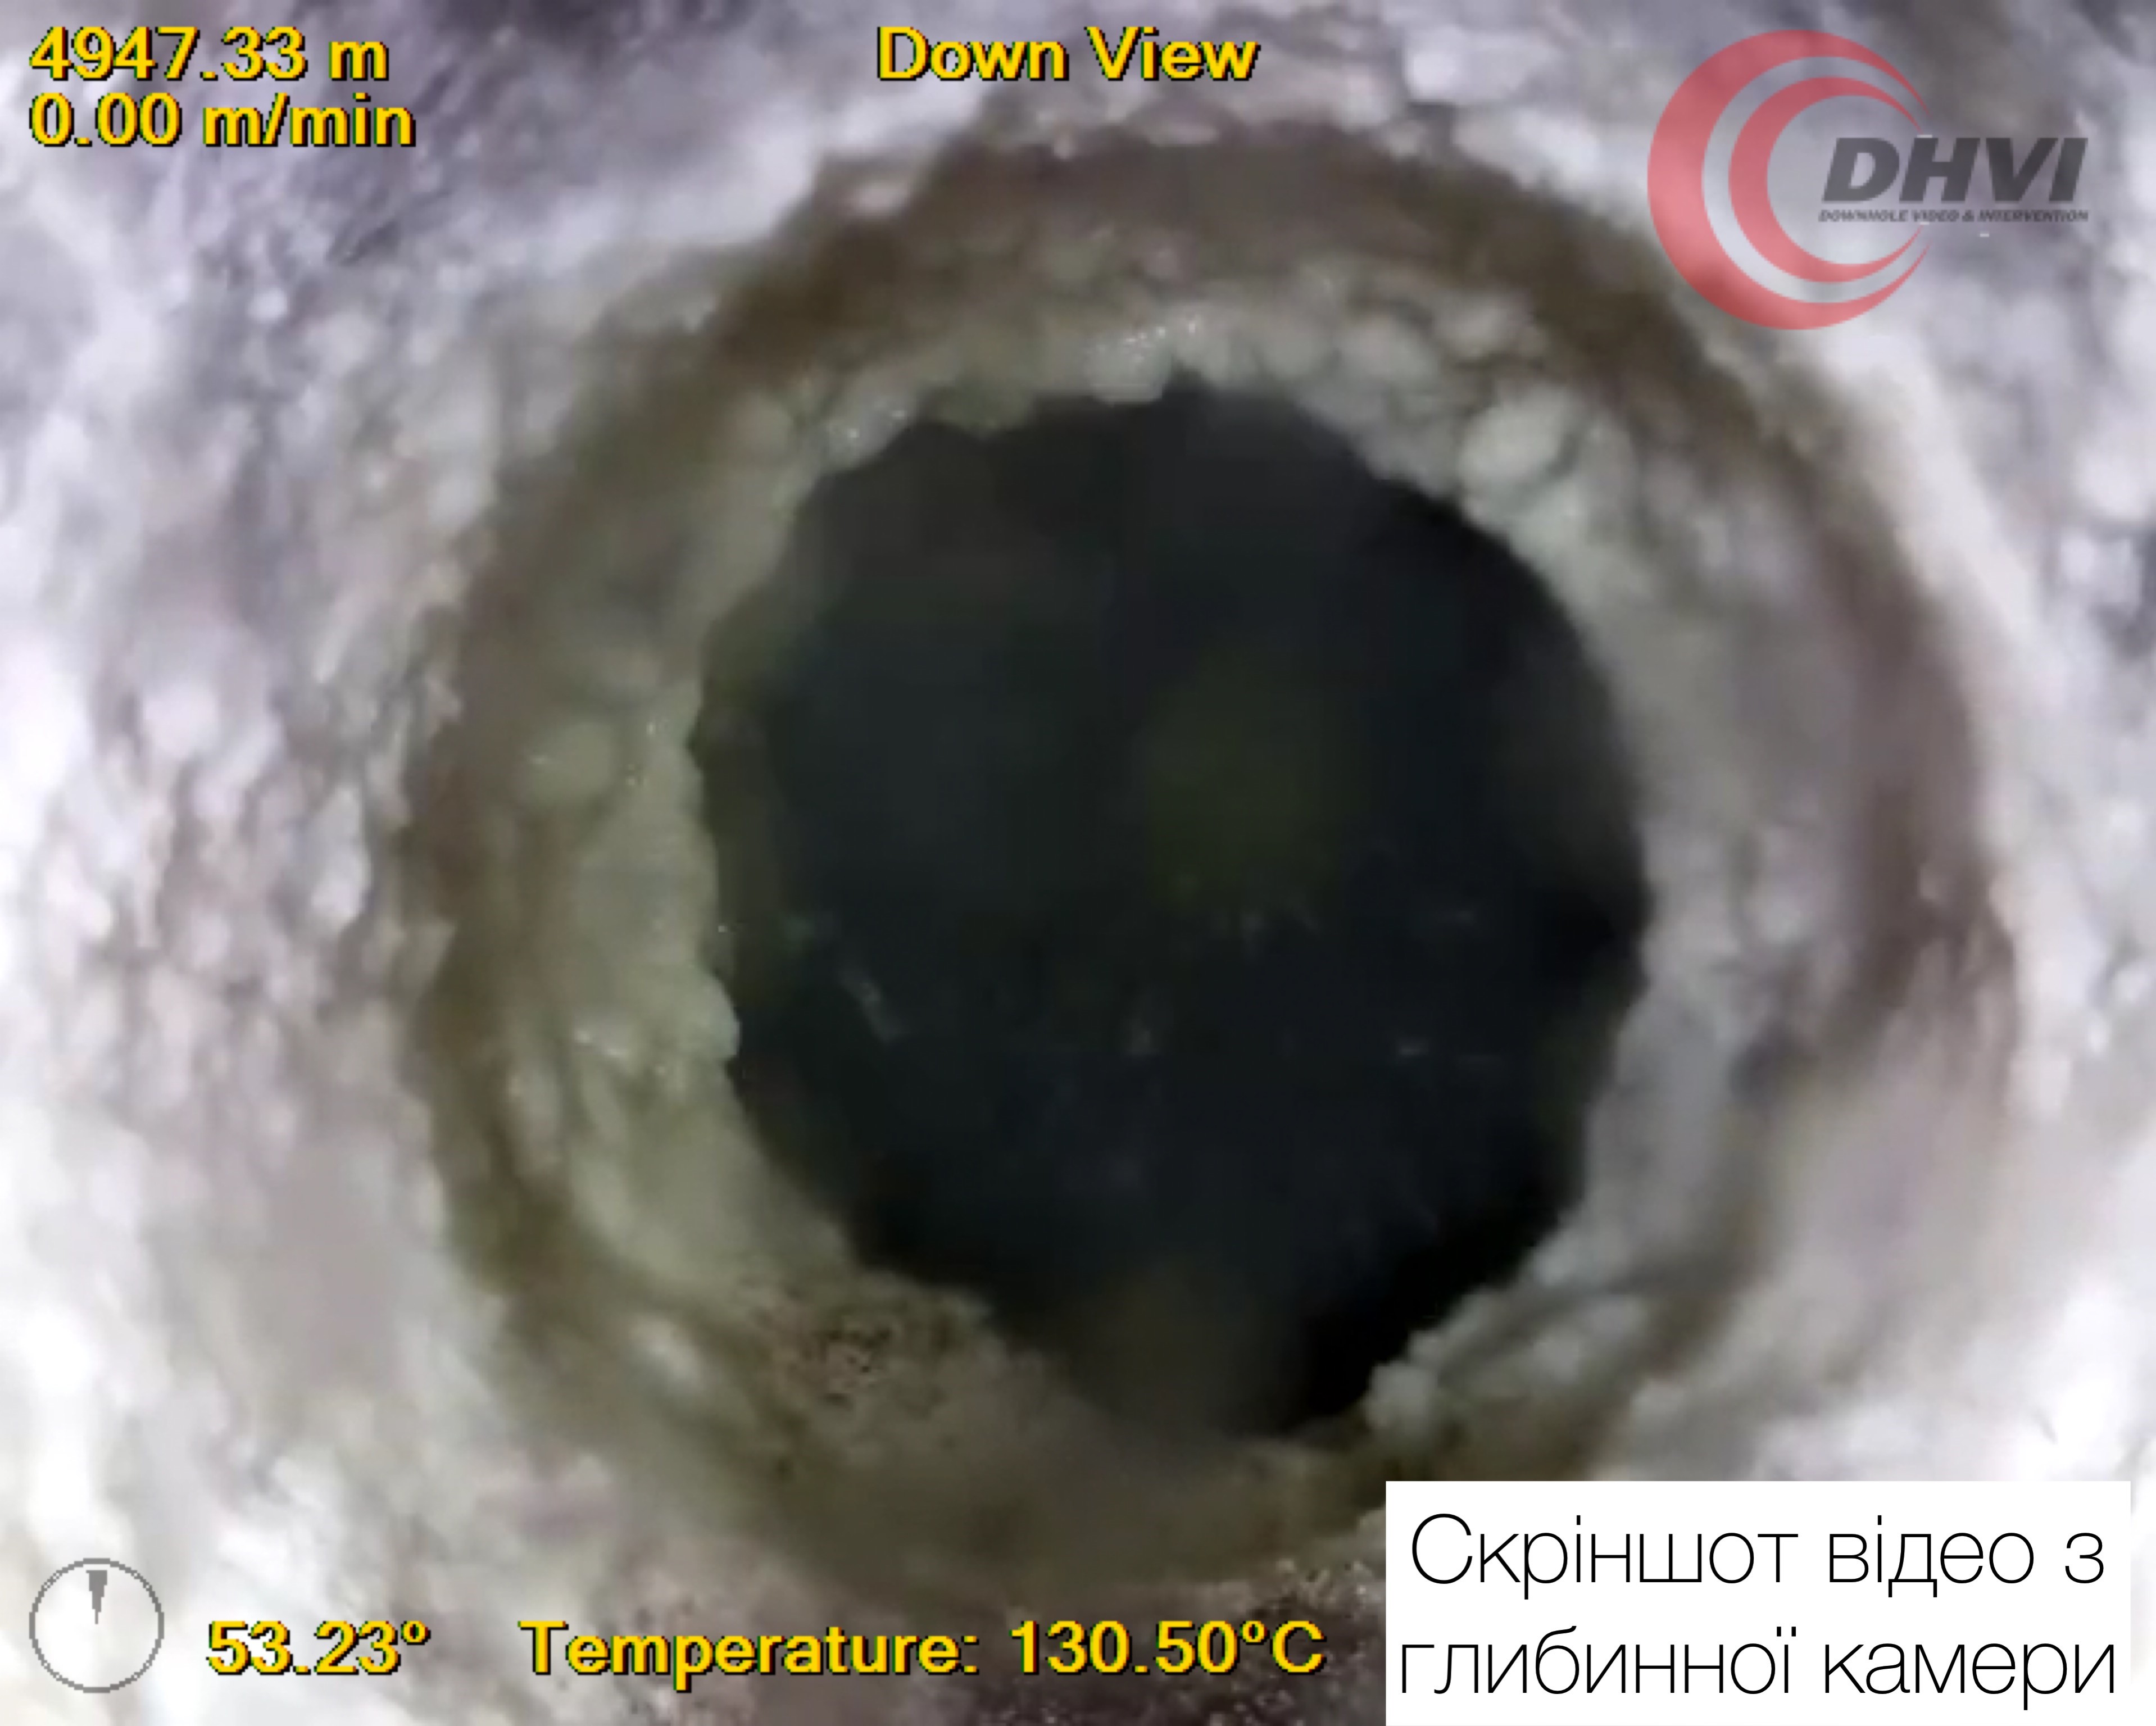 Зазирнути в надра: ДТЕК Нафтогаз вперше в Україні застосував глибинні відеокамери